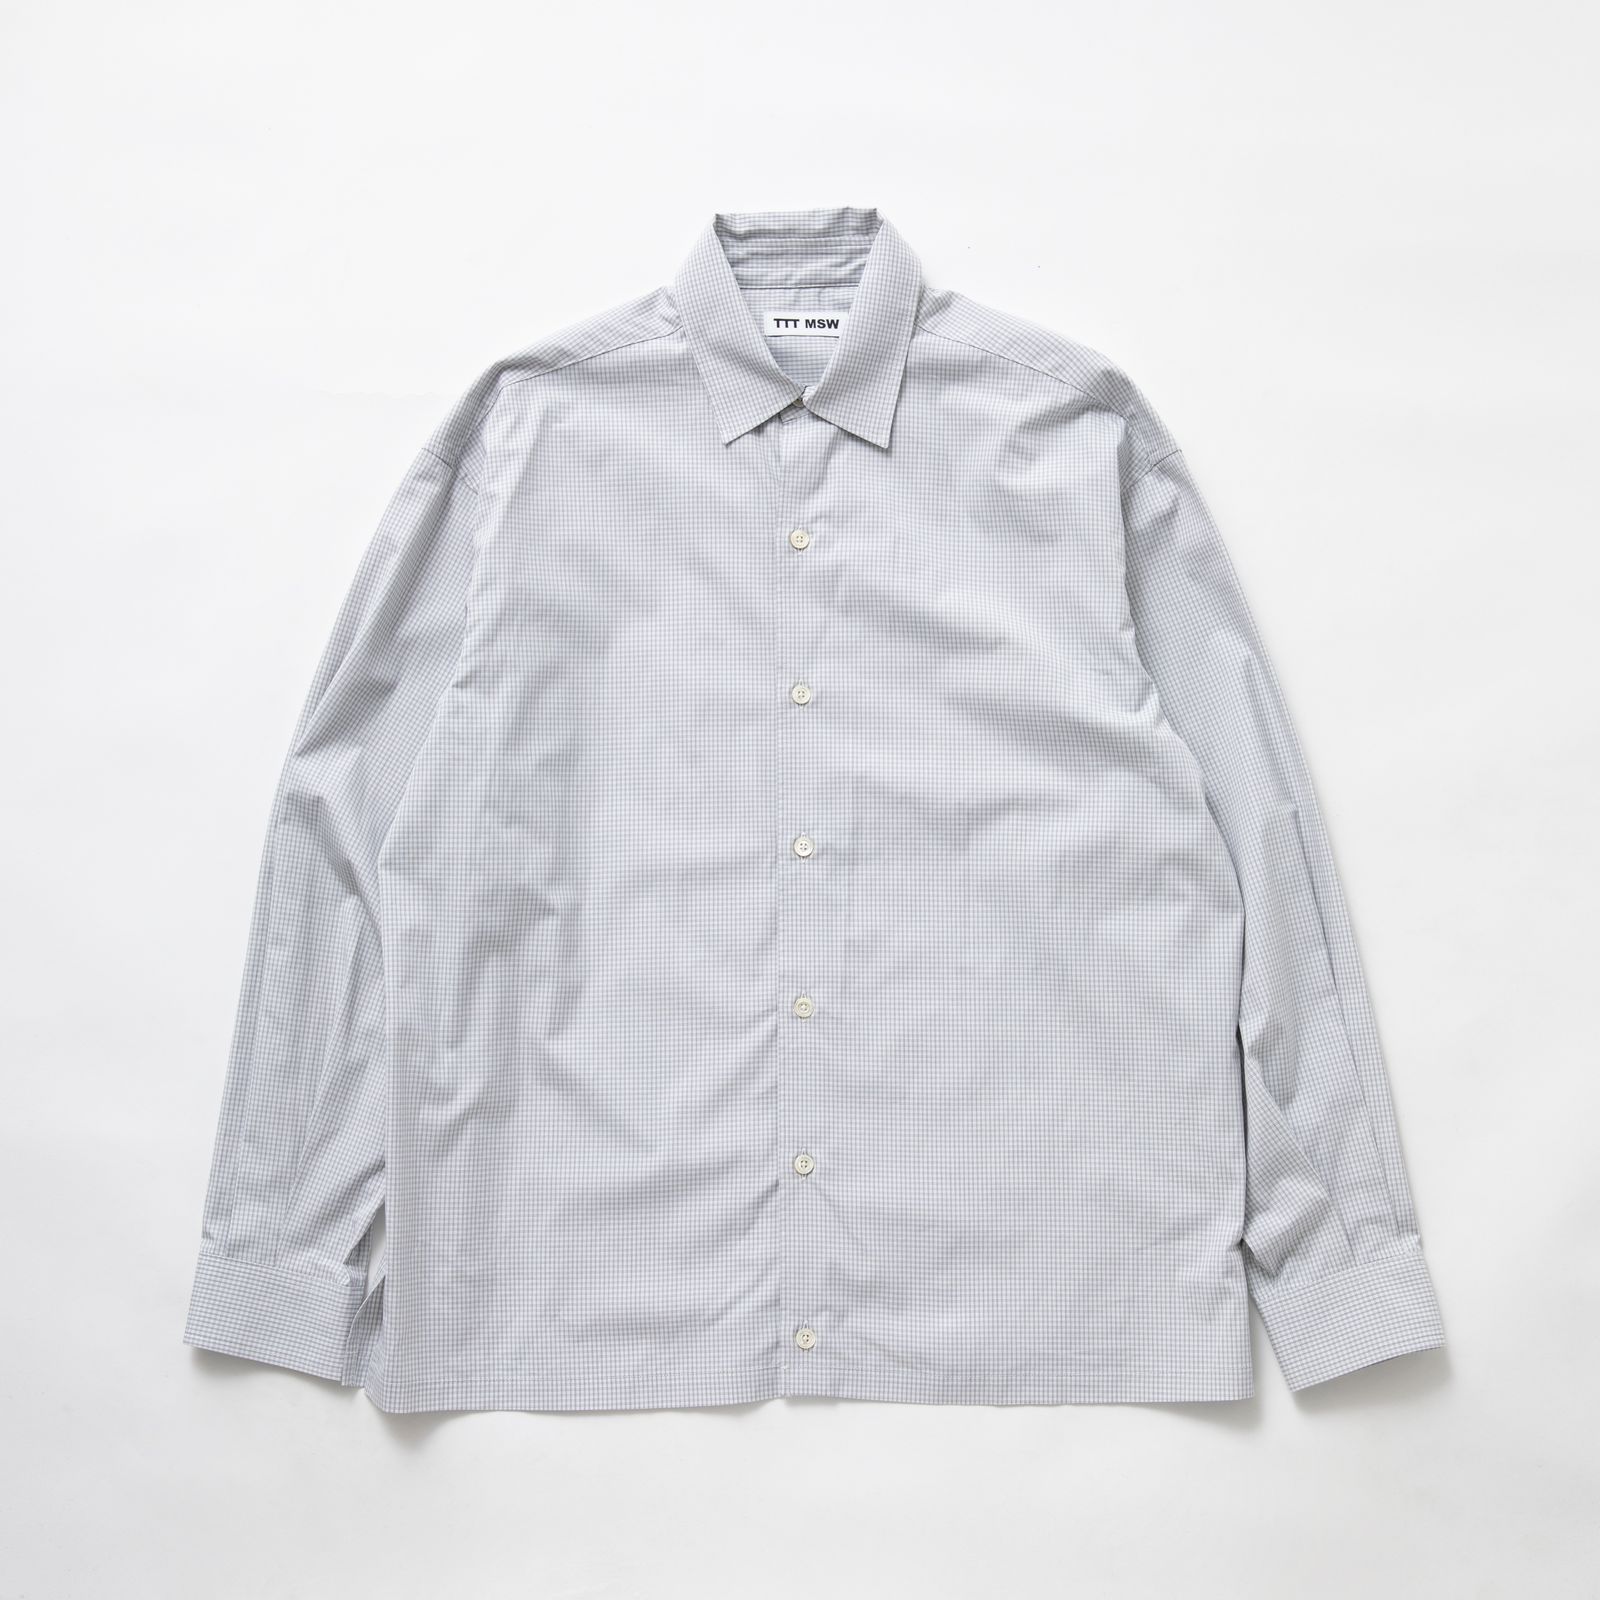 TTT MSW - 【残りわずか】Regular Collar Shirt | ACRMTSM ONLINE STORE